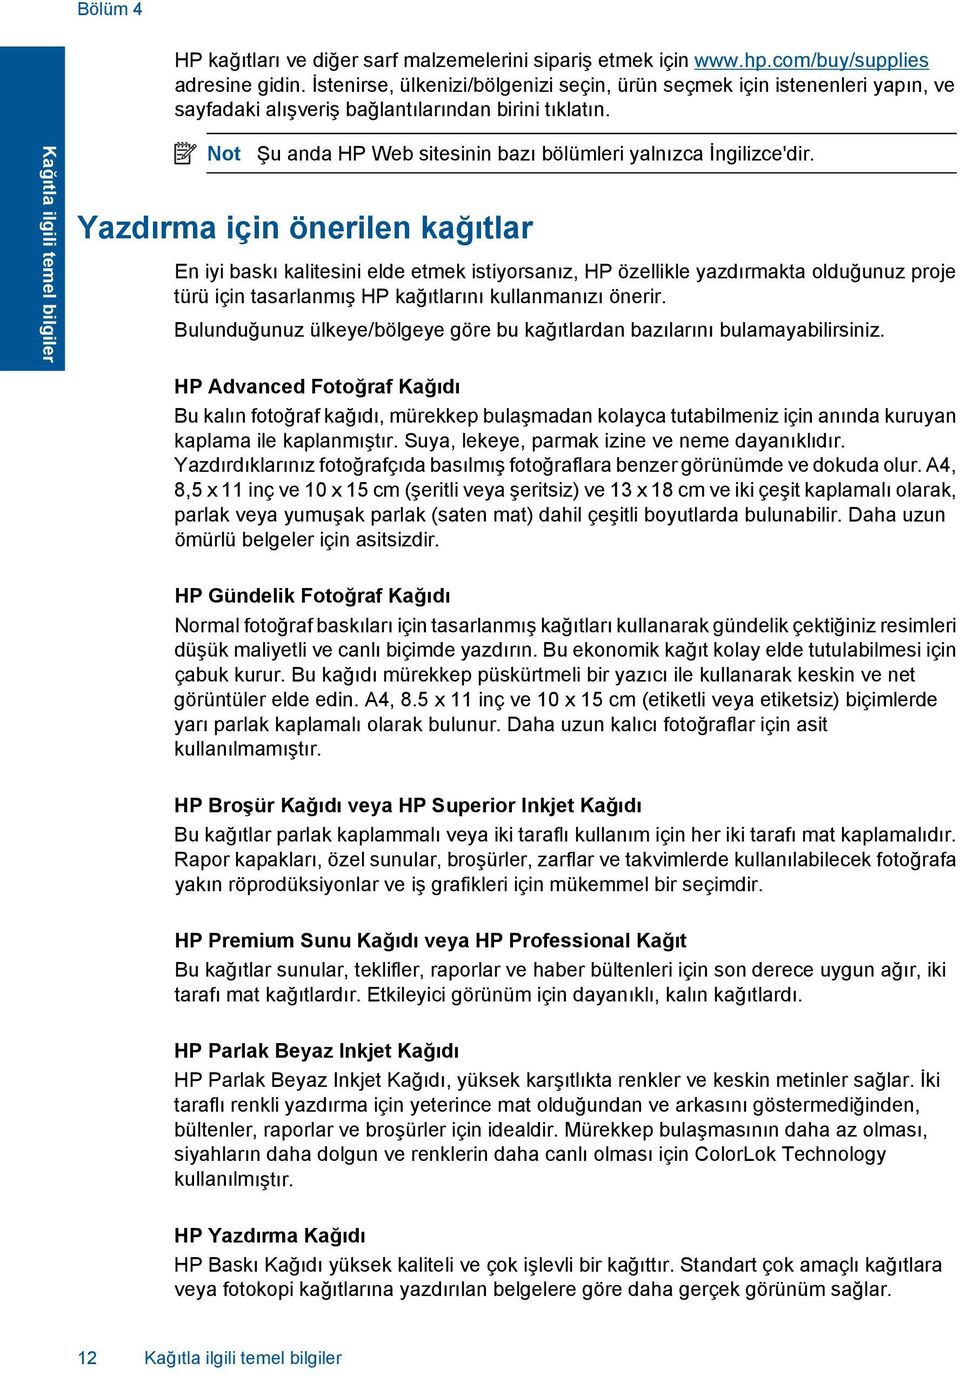 Kağıtla ilgili temel bilgiler Not Şu anda HP Web sitesinin bazı bölümleri yalnızca İngilizce'dir.